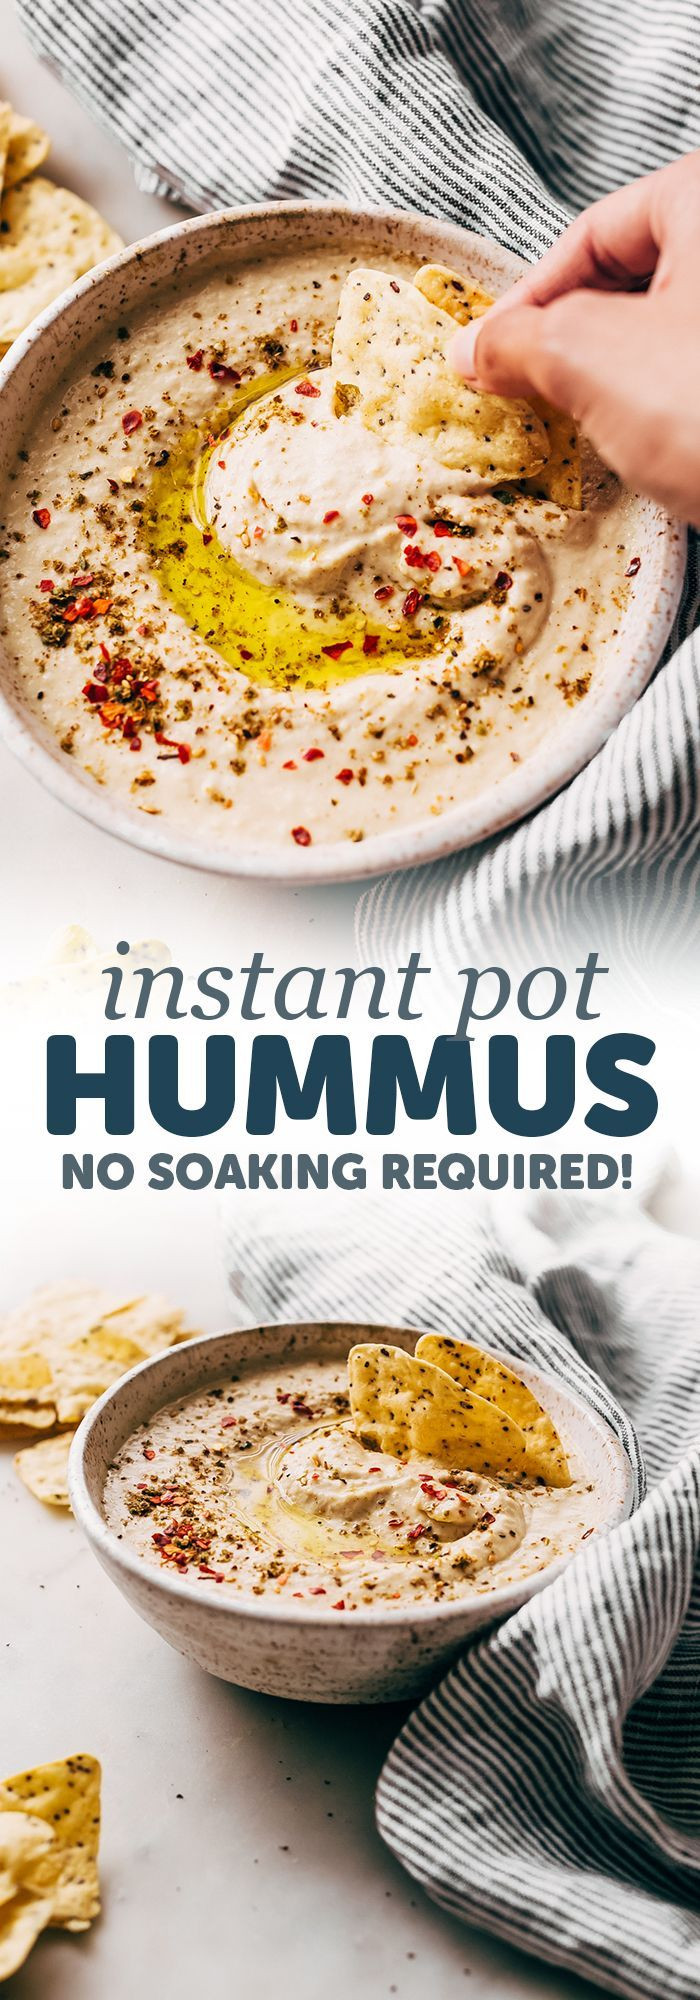 Instant Pot Gourmet Recipes
 Instant Pot Hummus Recipe